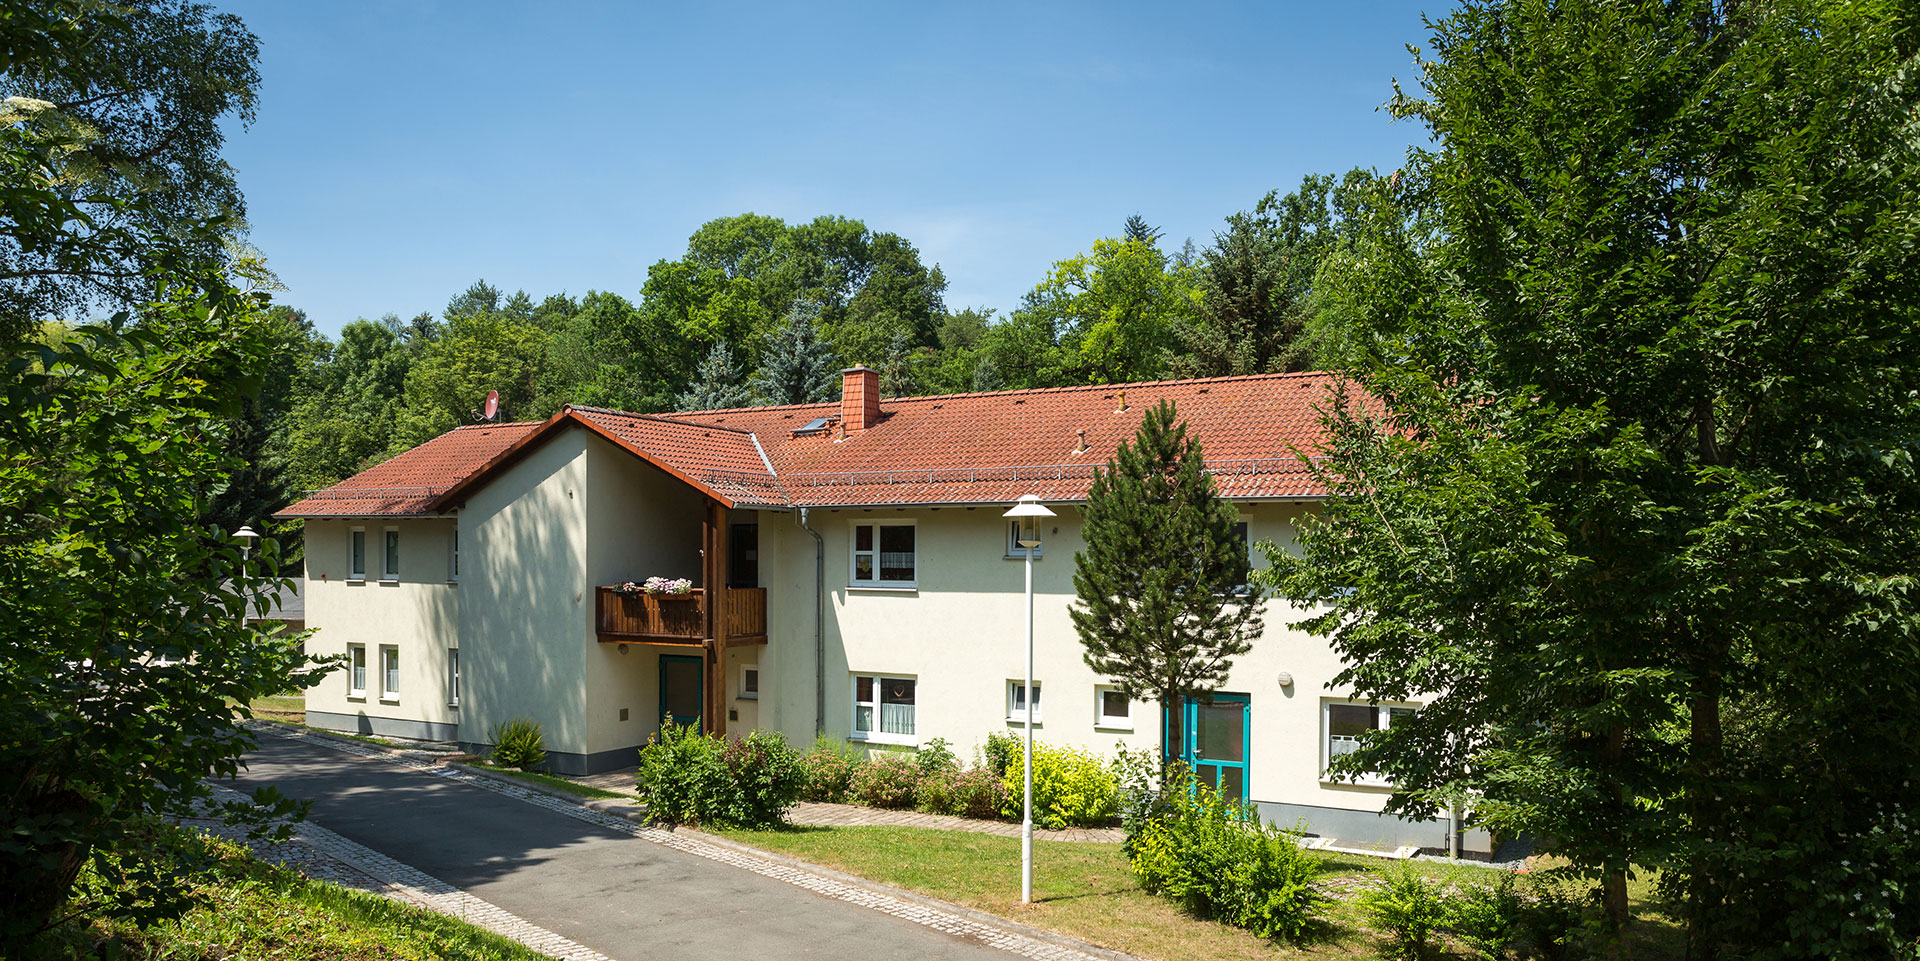 Eines der Wohnhäuser im Jugendhilfezentrum Bad Köstritz: ein modernes zweistöckiges Haus mit Holzbalkonen, umgeben vom satten Grün der Natur.